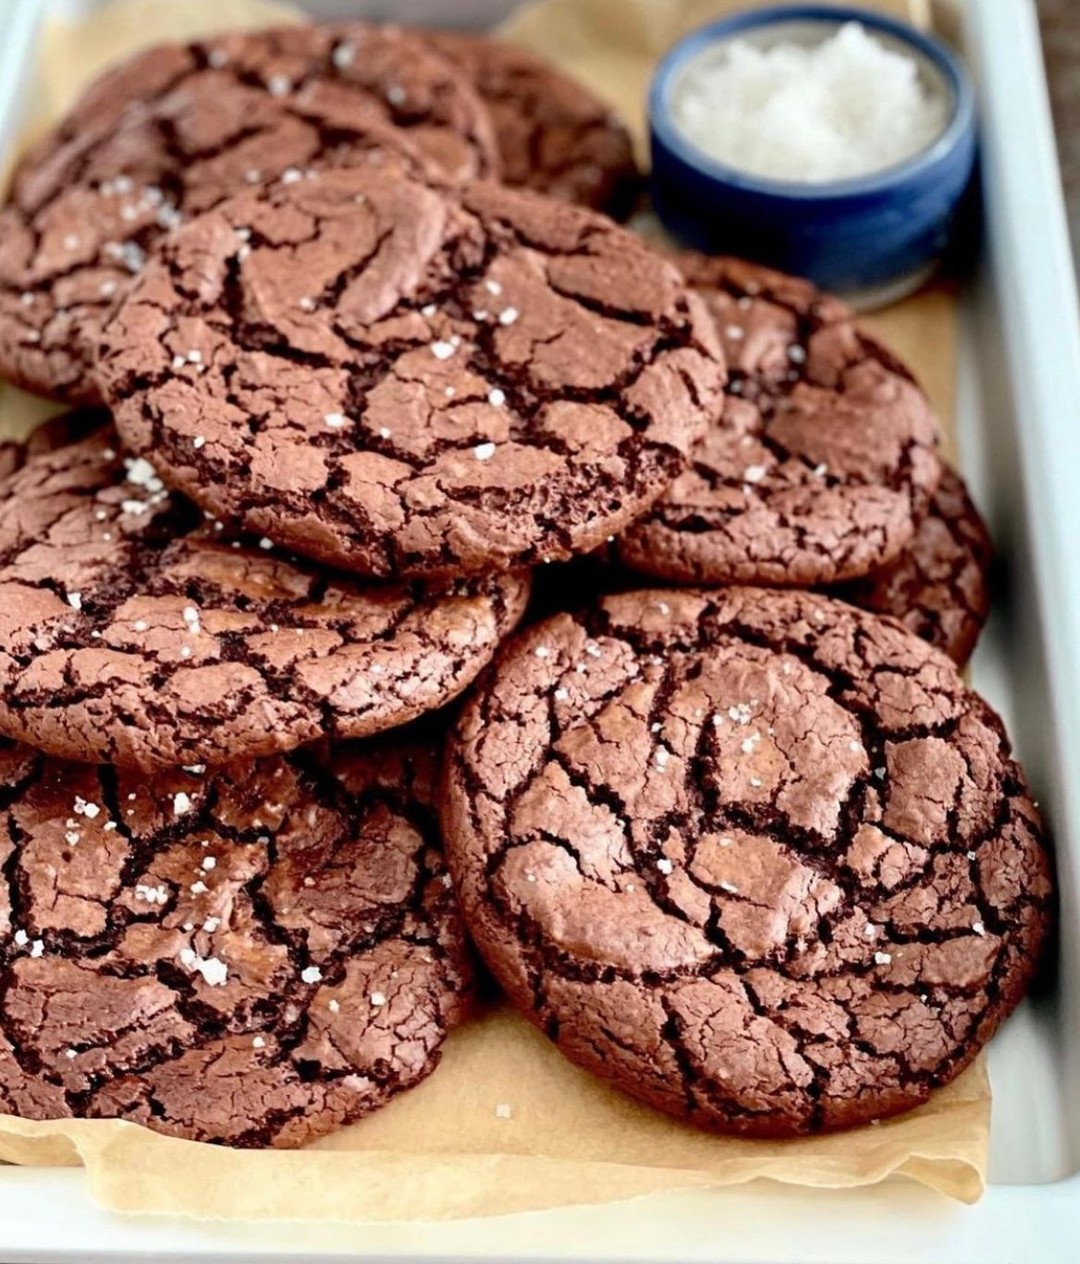 Browniecookies😋

Jeg vil godt lige starte med en lille advarsel, de her cookies smager uforbandet godt og forsvinder hurtigt... 

Men de er et helt perfekt weekendprojekt, både at bage og spise. Og så er man garanteret glade børn og mand 😂❤️

✨Har du fået lyst til cookies nu?? ✨

💡Husk at du kan gemme opslaget nederst i højre hjørne på bogmærket samt finde opskriften på www.madmusen.dk💡

#weekend #hygge #cookies #kage #cake #kake #hjemmebag #hjemmebakt #deldinmad #børnevenligmad #nemmad #instafood #nrkmat #godtno #svenskmat #chokolade #chocolat #dessert